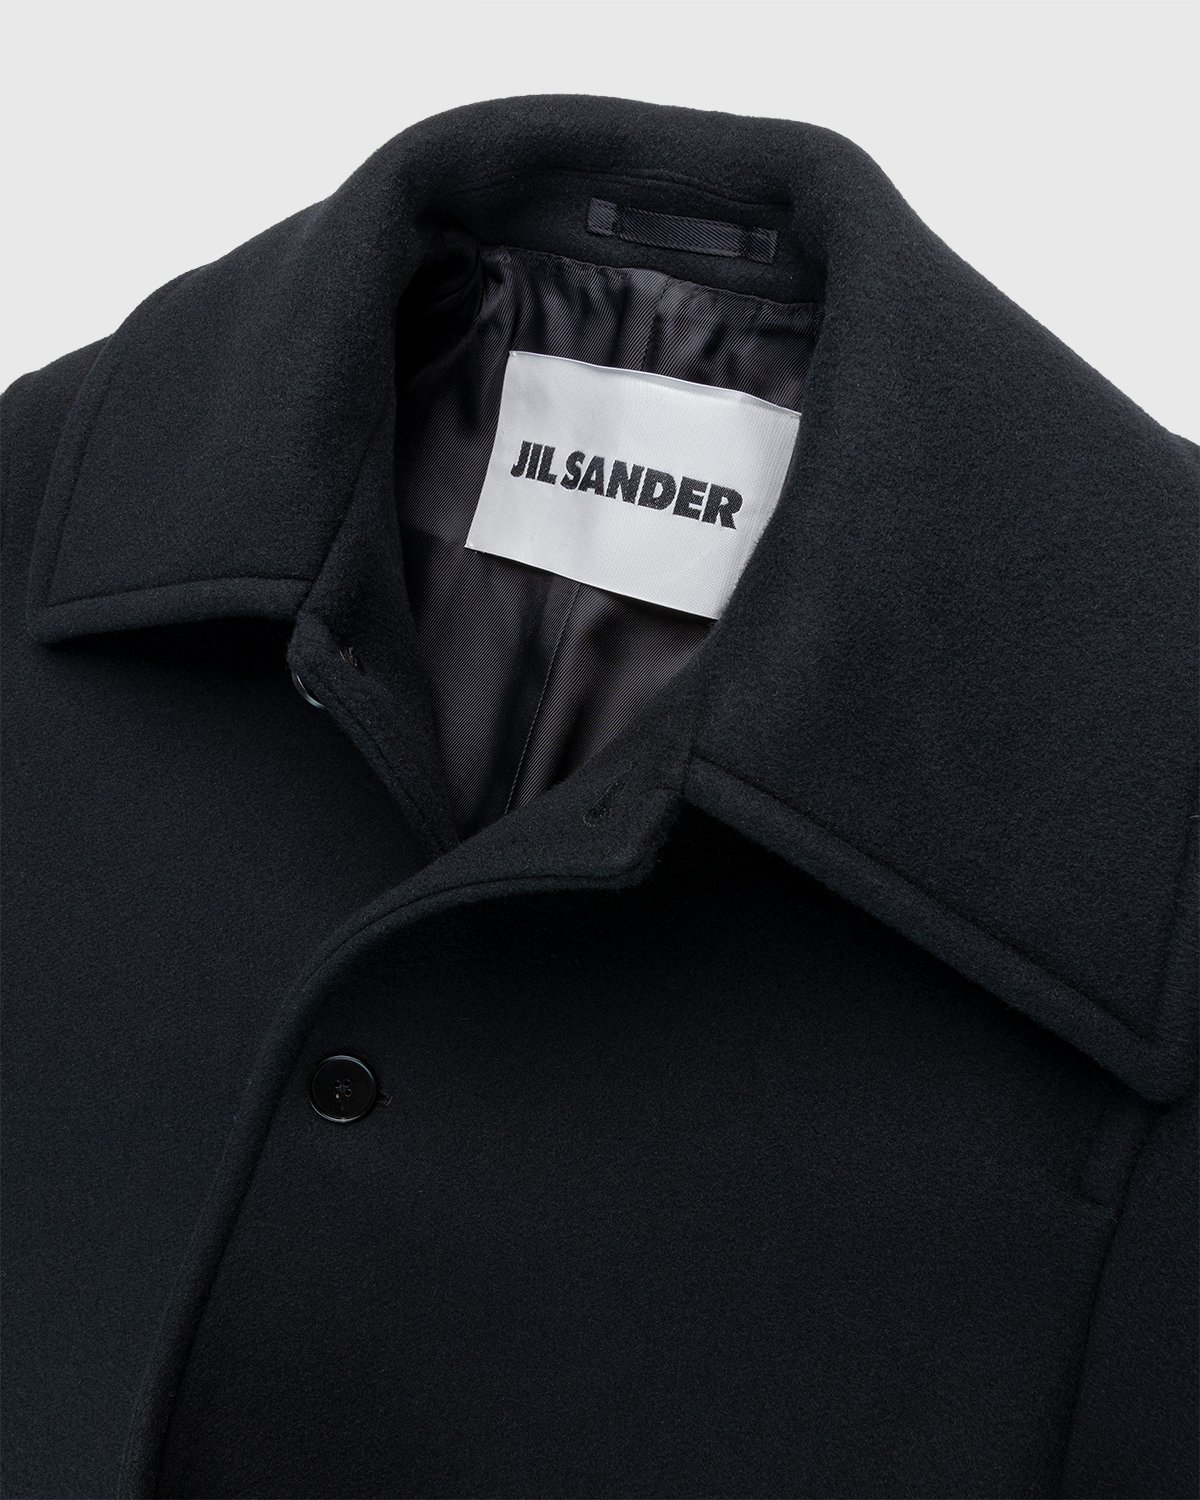 Jil Sander - Coat Black - Clothing - Black - Image 3